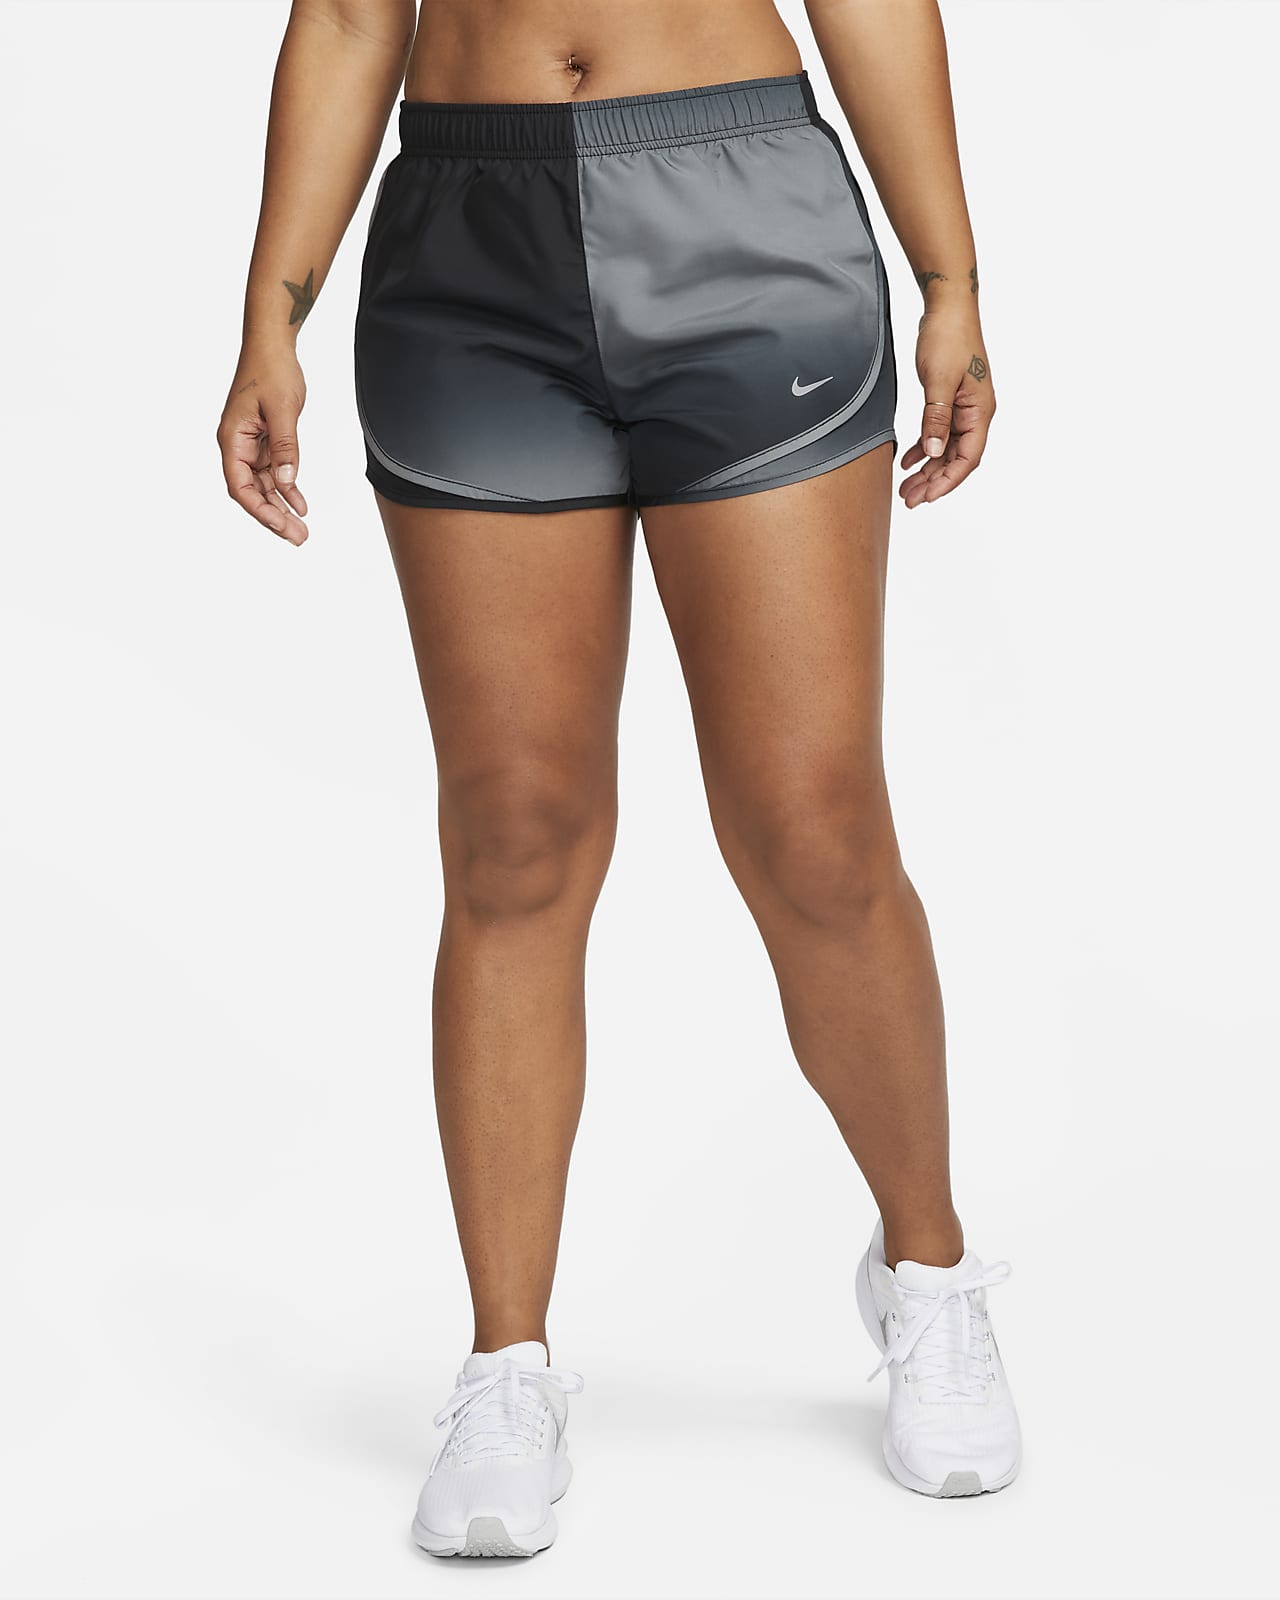 Shorts con ropa forrada para mujer Nike Tempo. Nike.com